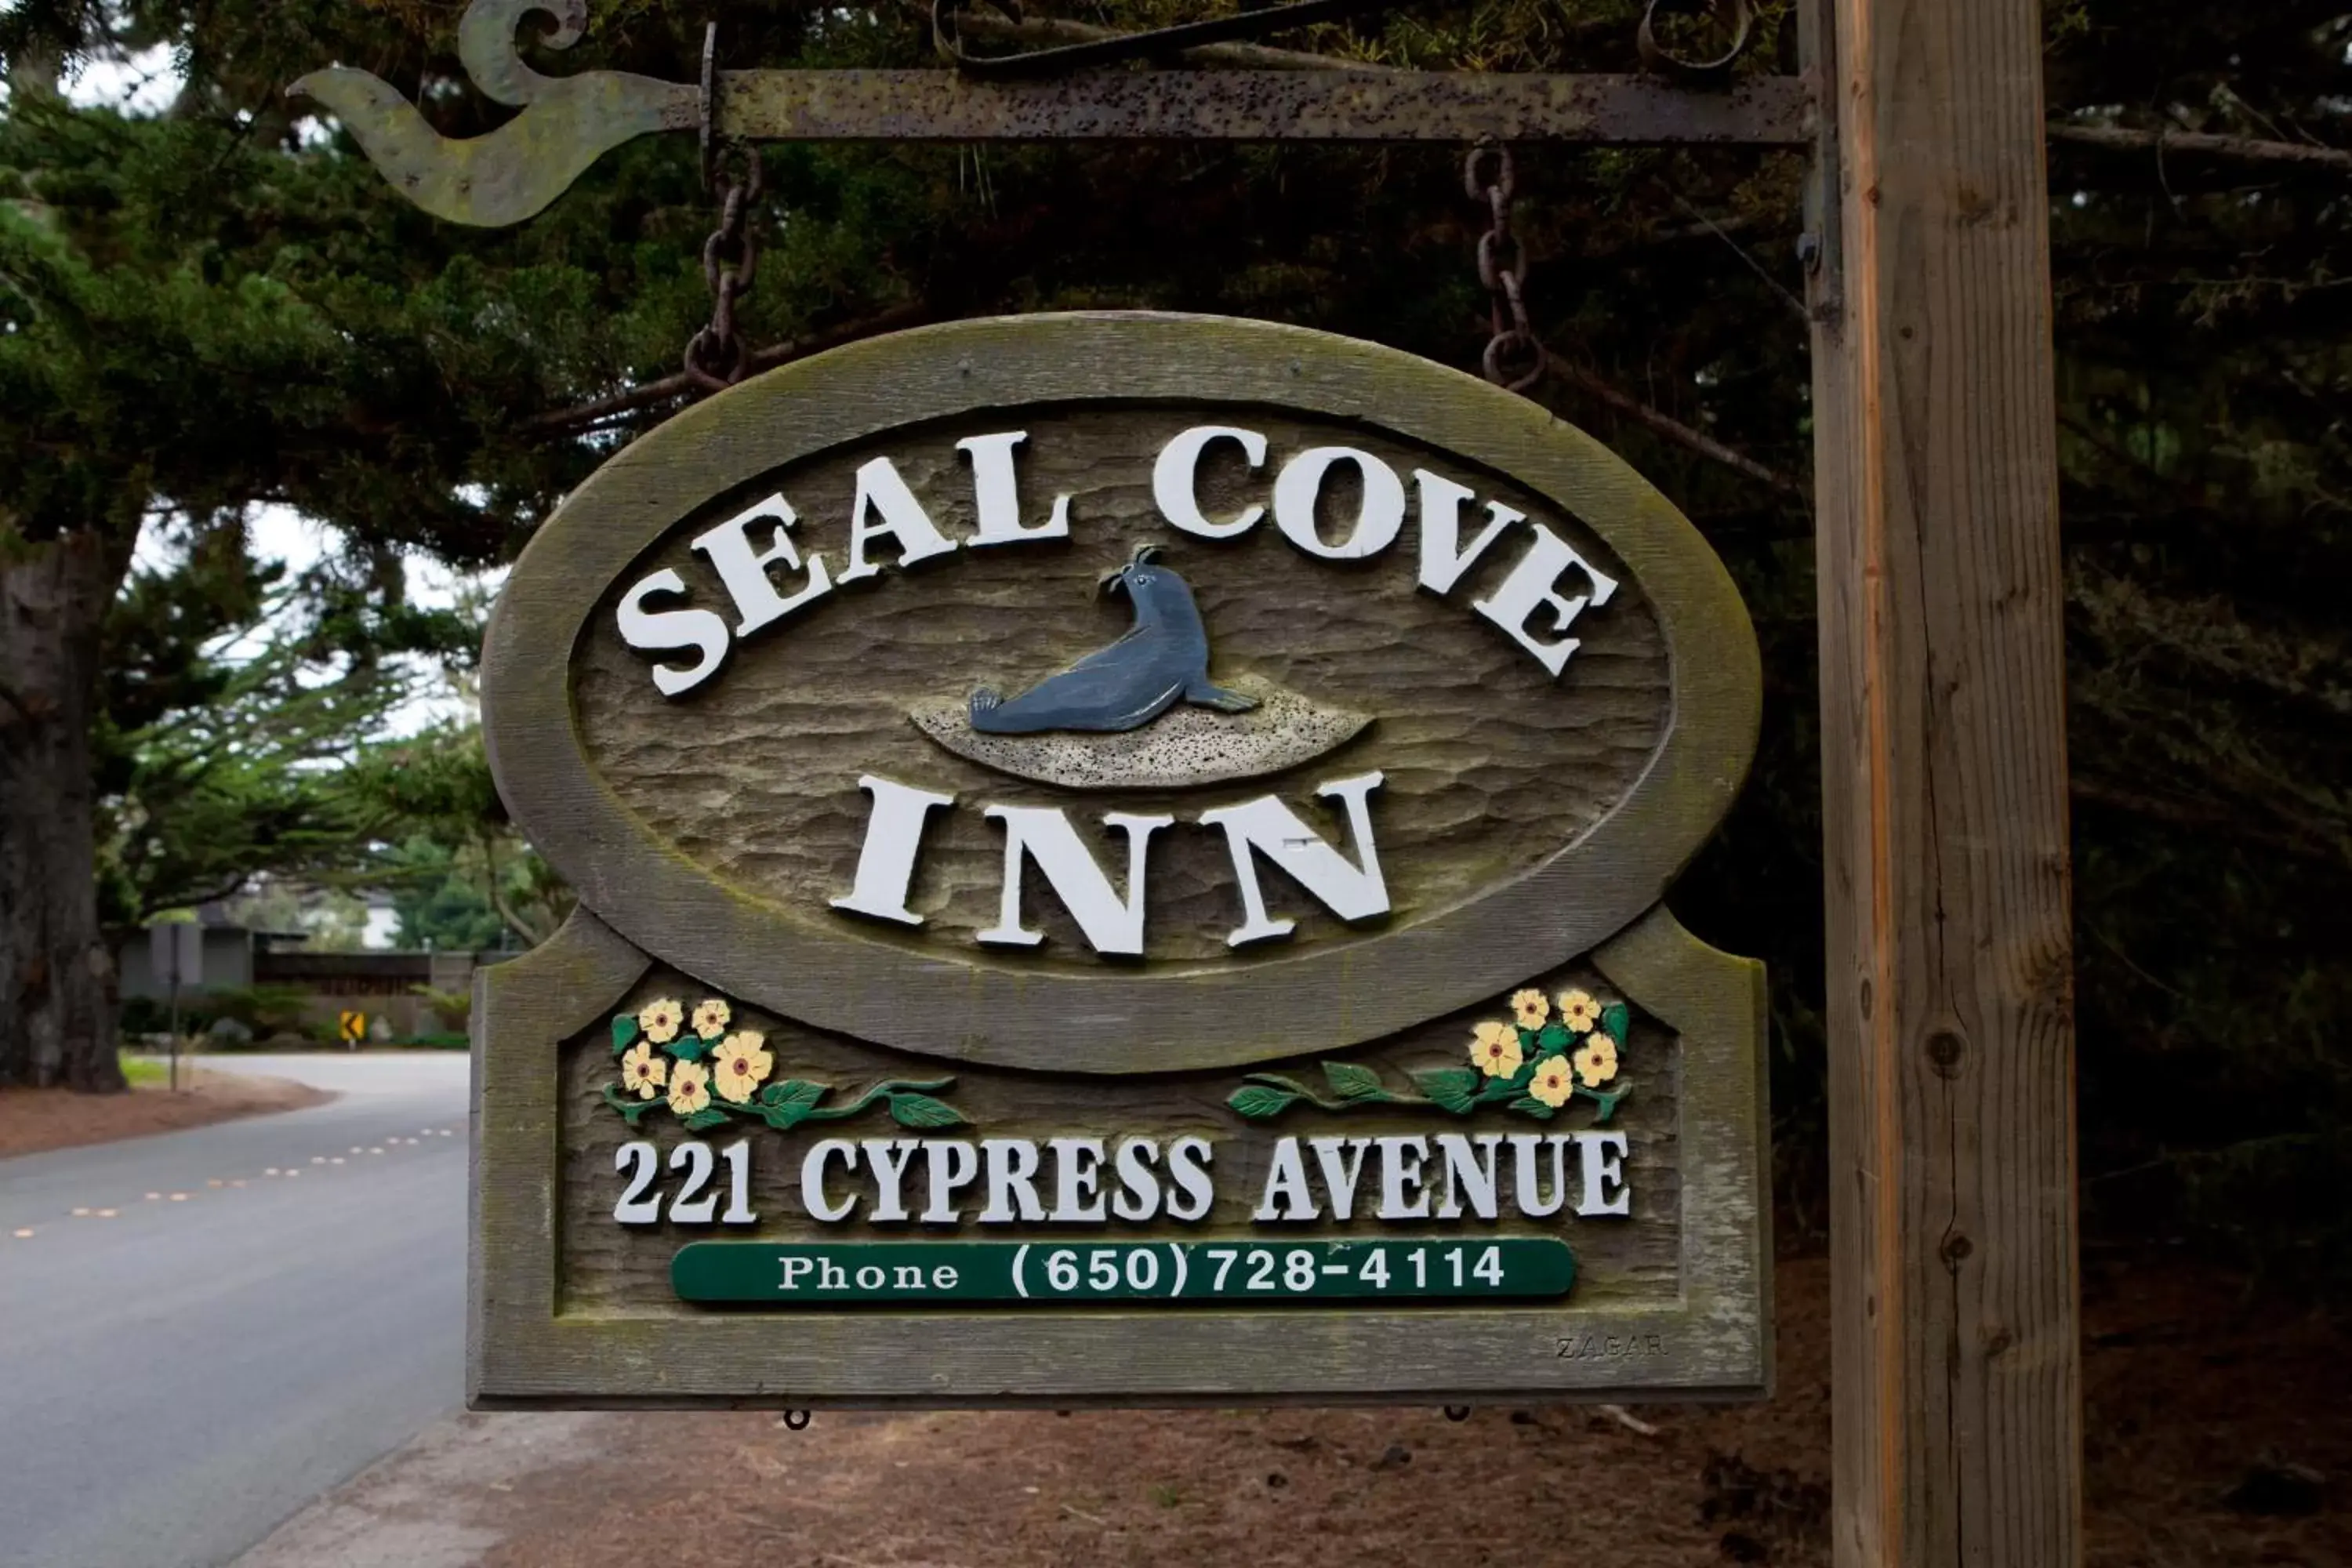 Facade/entrance, Property Logo/Sign in Seal Cove Inn